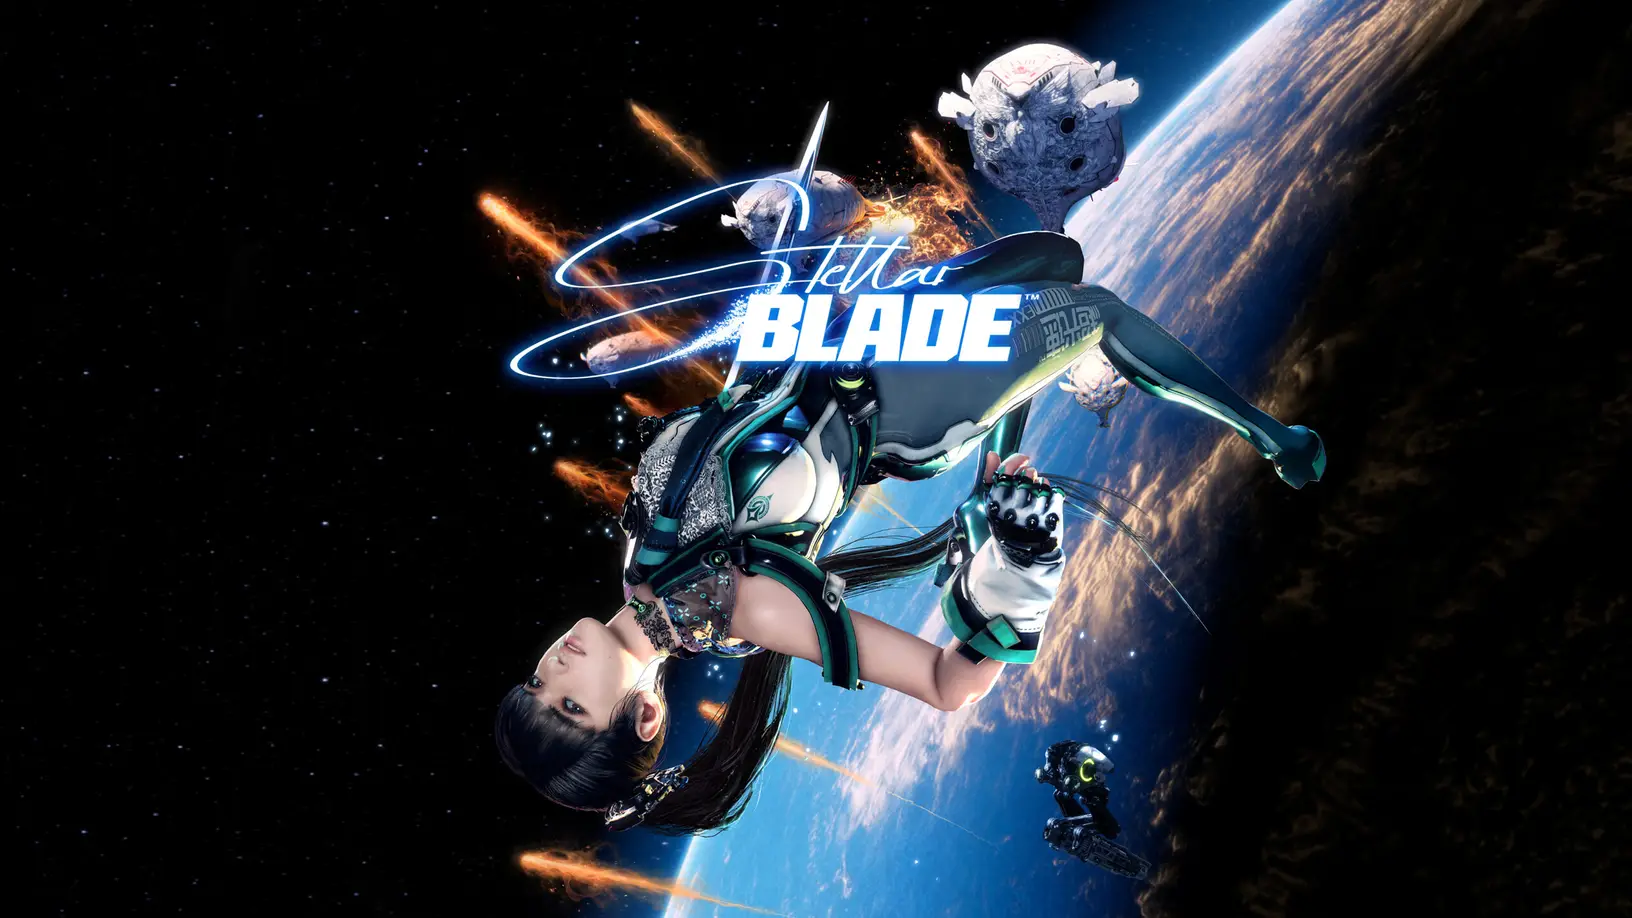 كل ما نعرفه عن Stellar Blade